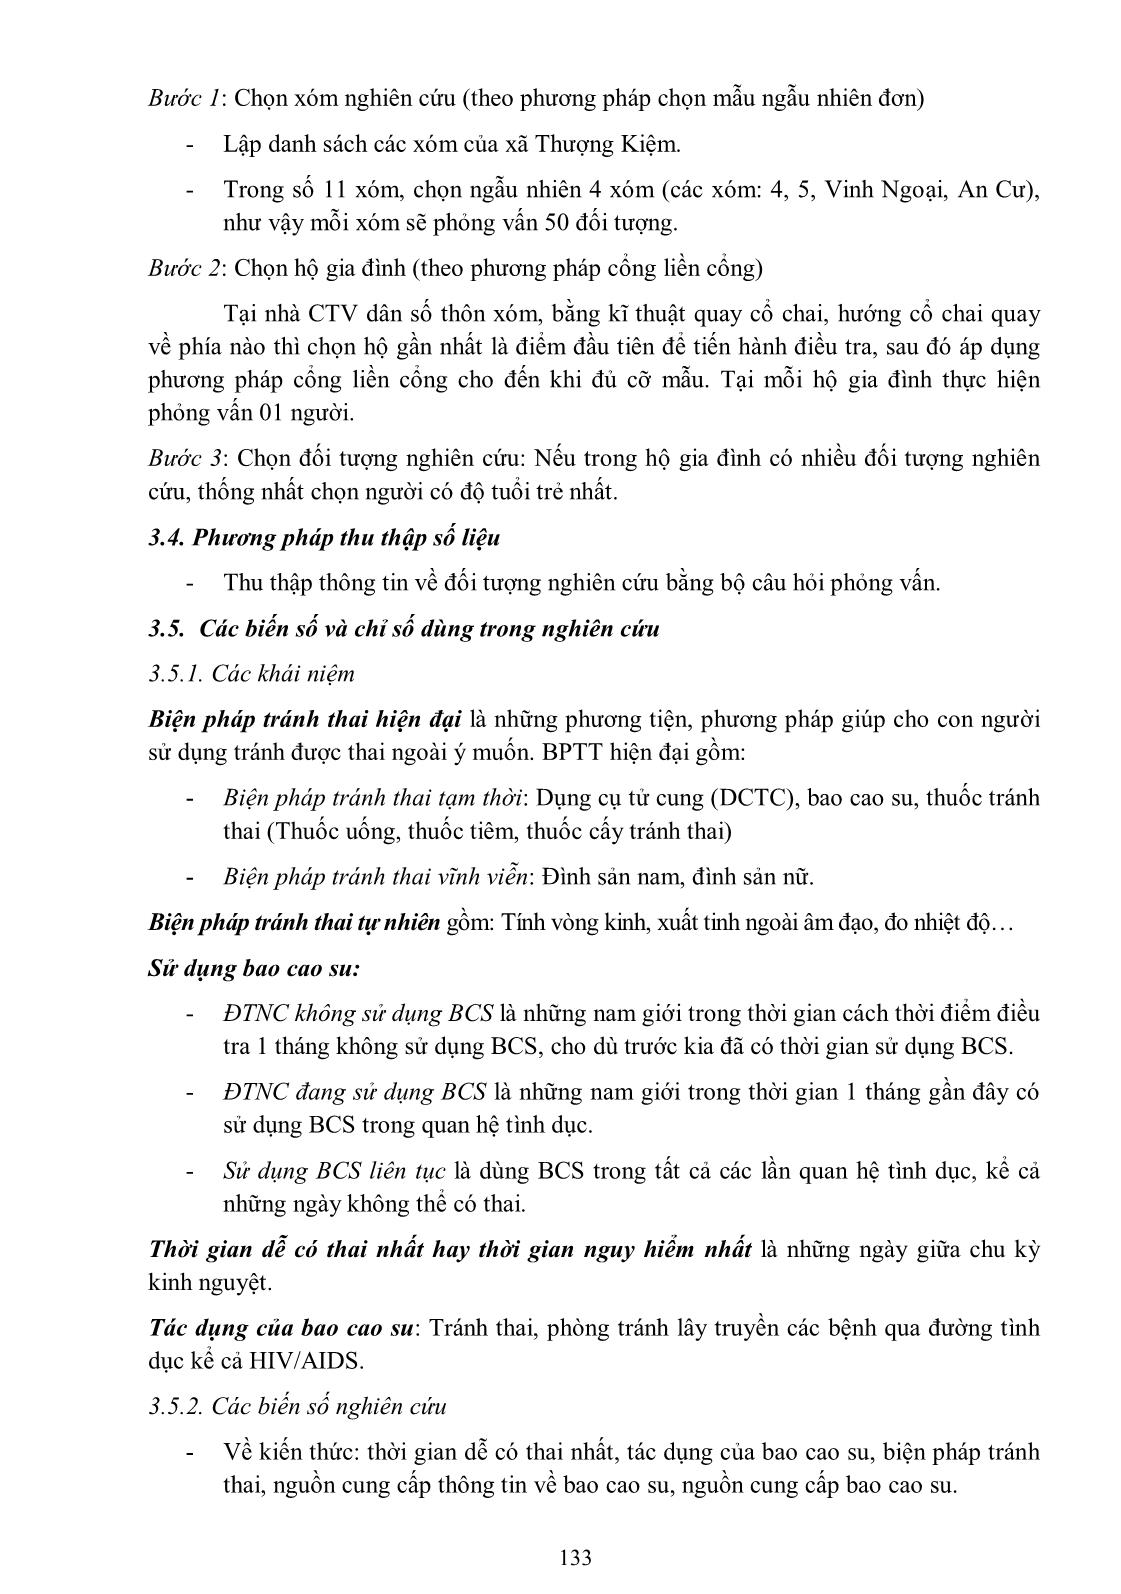 Mô tả kiến thức, thái độ và thực hành sử dụng bao cao su trong kế hoạch hóa gia đình của nam giới có vợ tại xã Thượng Kiệm, huyện Kim Sơn, tỉnh Ninh Bình năm 2013 trang 3